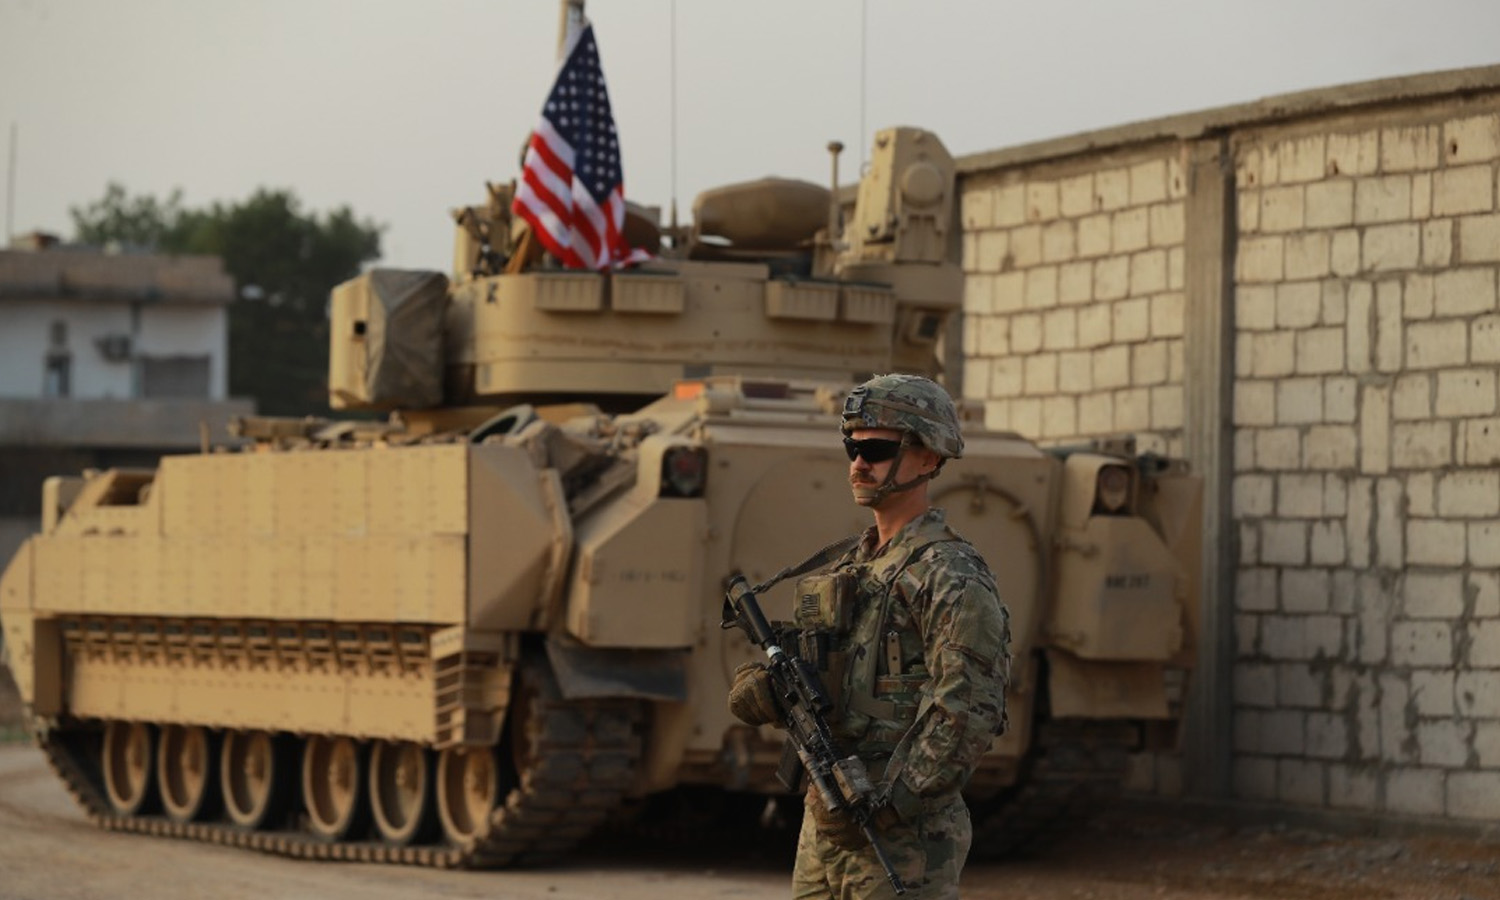 جندي أمريكي خلال تدريبات بين قوات التحالف و"قسد" شمال شرقي سوريا- 19 كانون الأول 2022 (العزم الصلب/ فيس بوك)